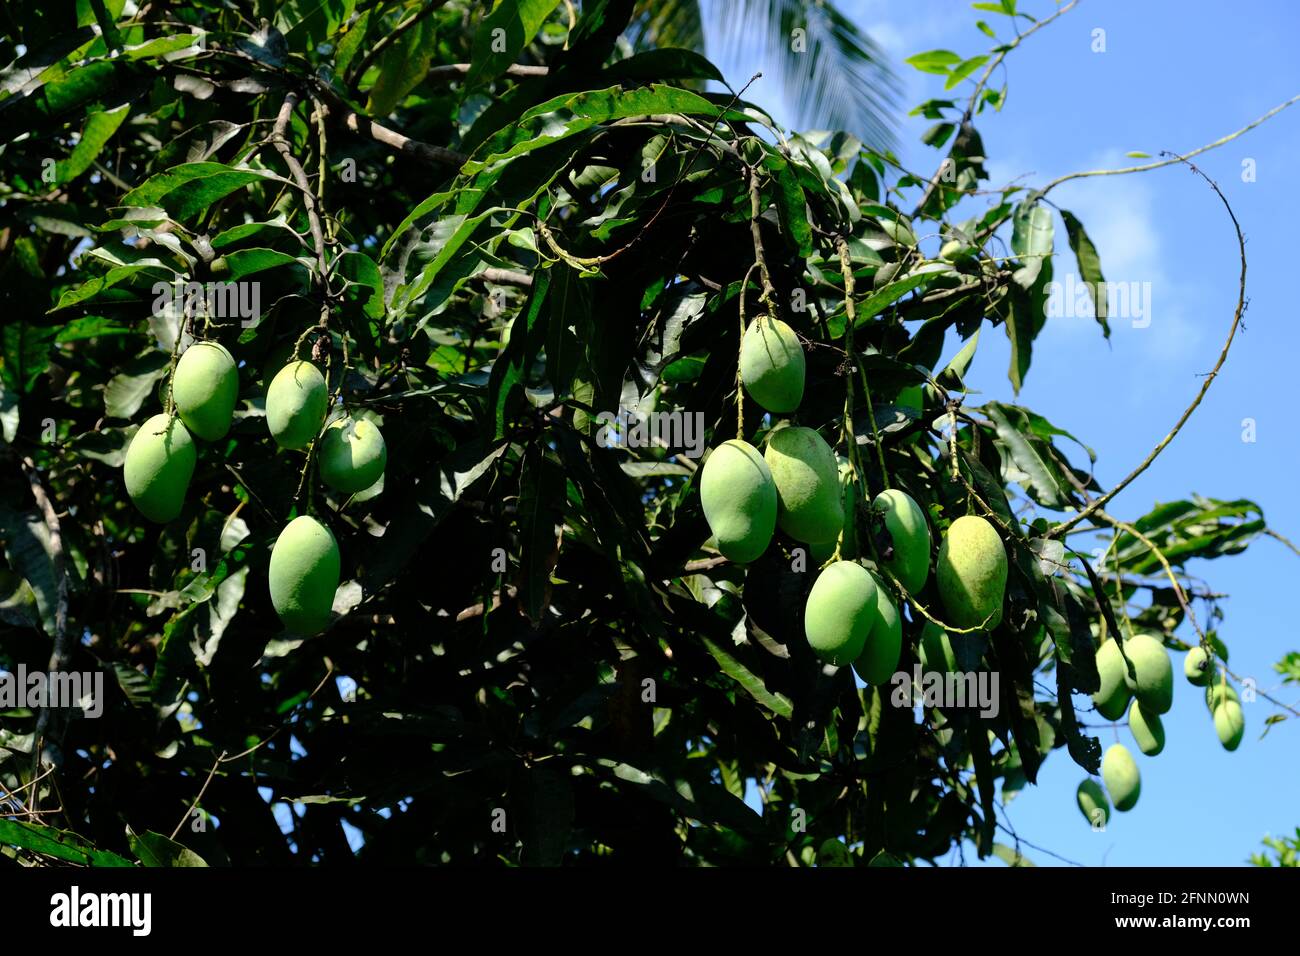 Indonesia Isole Anambas - albero di mango con frutta - Mangifera indica Foto Stock